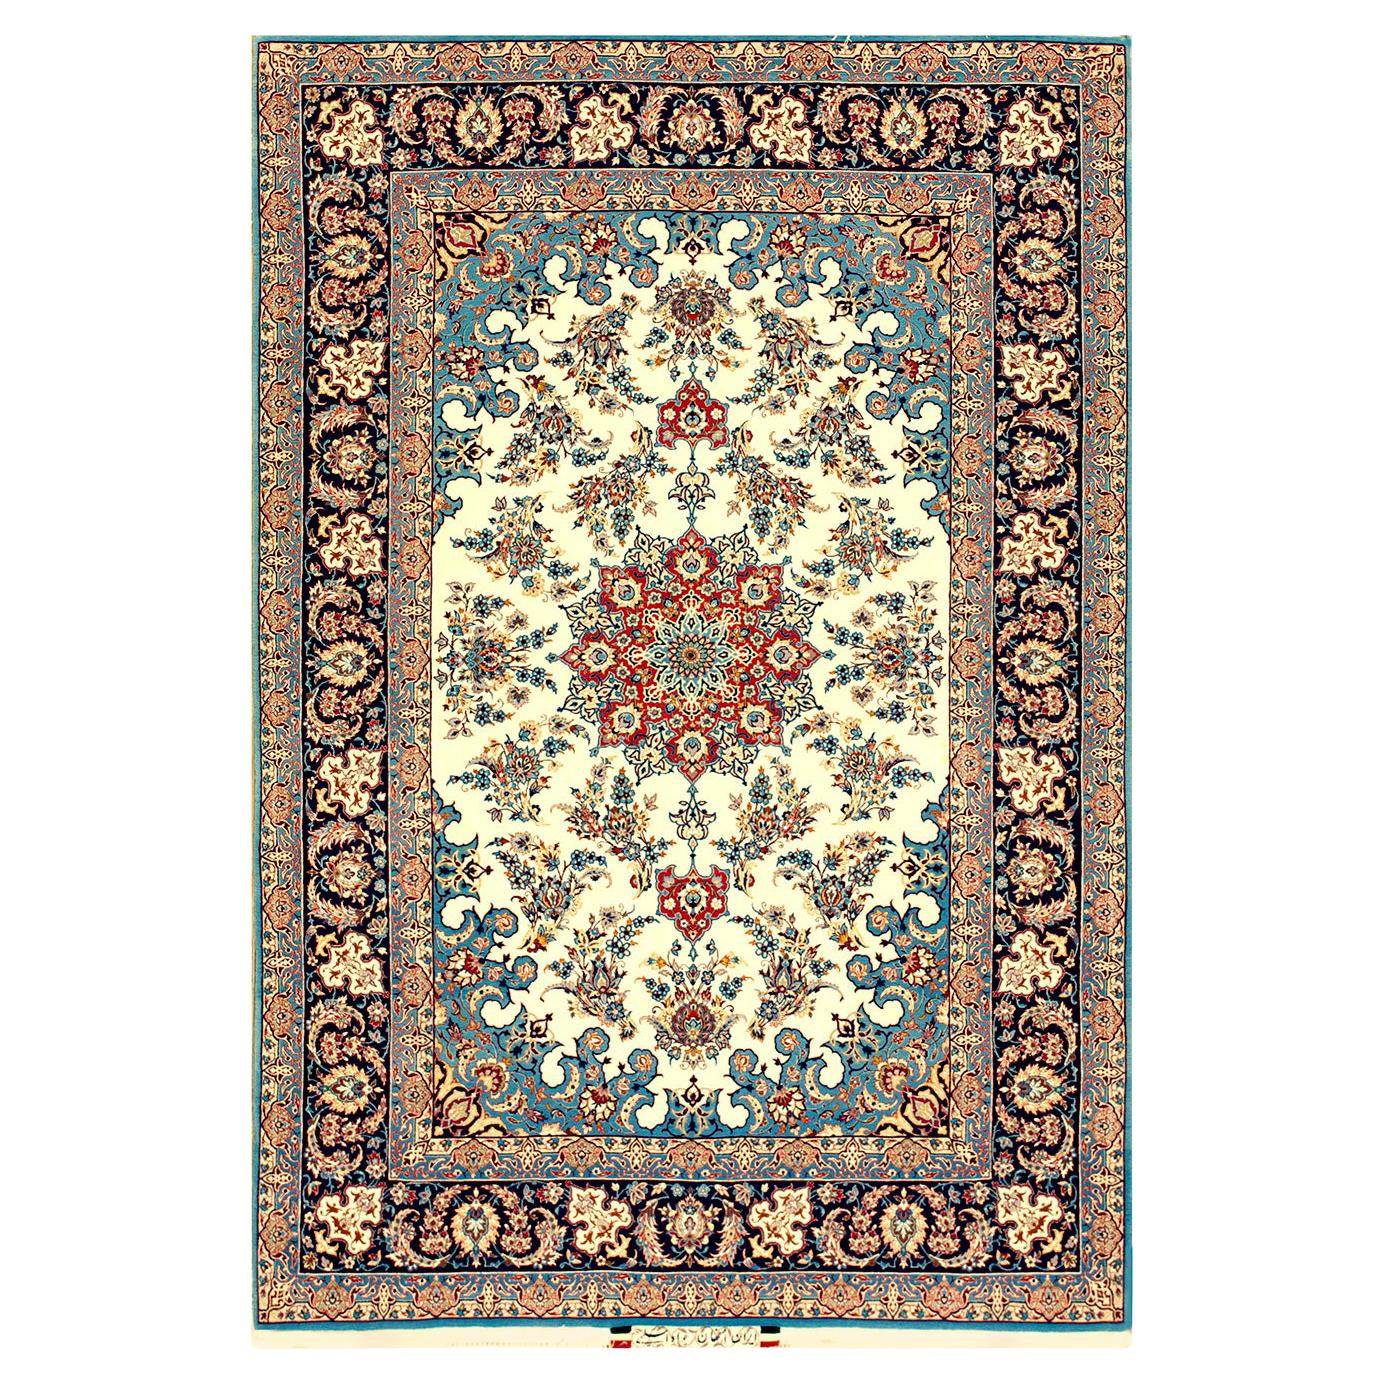 Mid 20th Century Persian Isfahan Carpet ( 4'11" x 7'2"  - 150 x 220 )